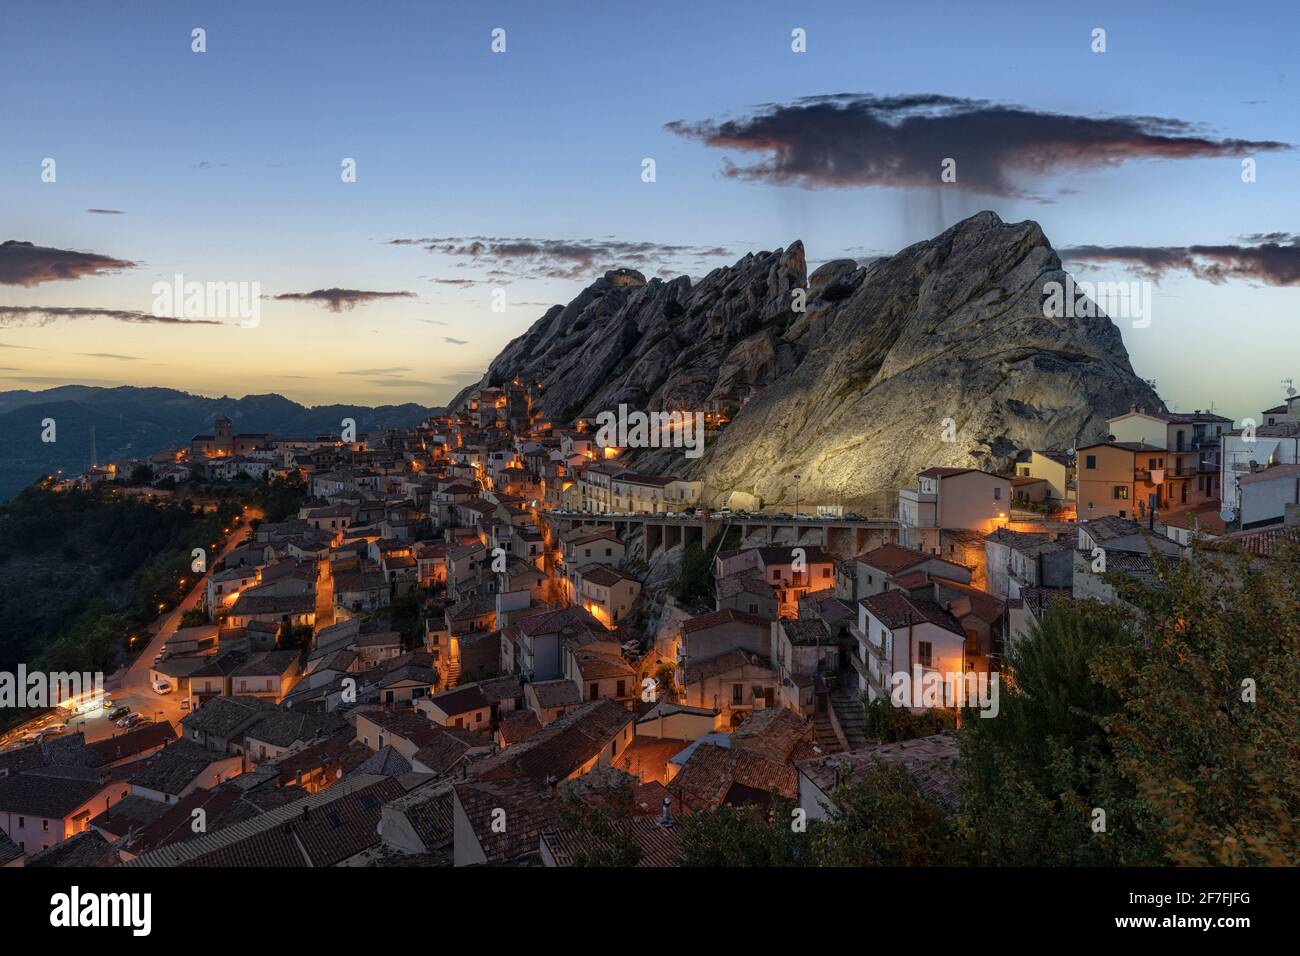 Vieille ville de Pietrapertosa au crépuscule, Dolomiti Lucane, province de Potenza, Basilicate, Italie, Europe Banque D'Images